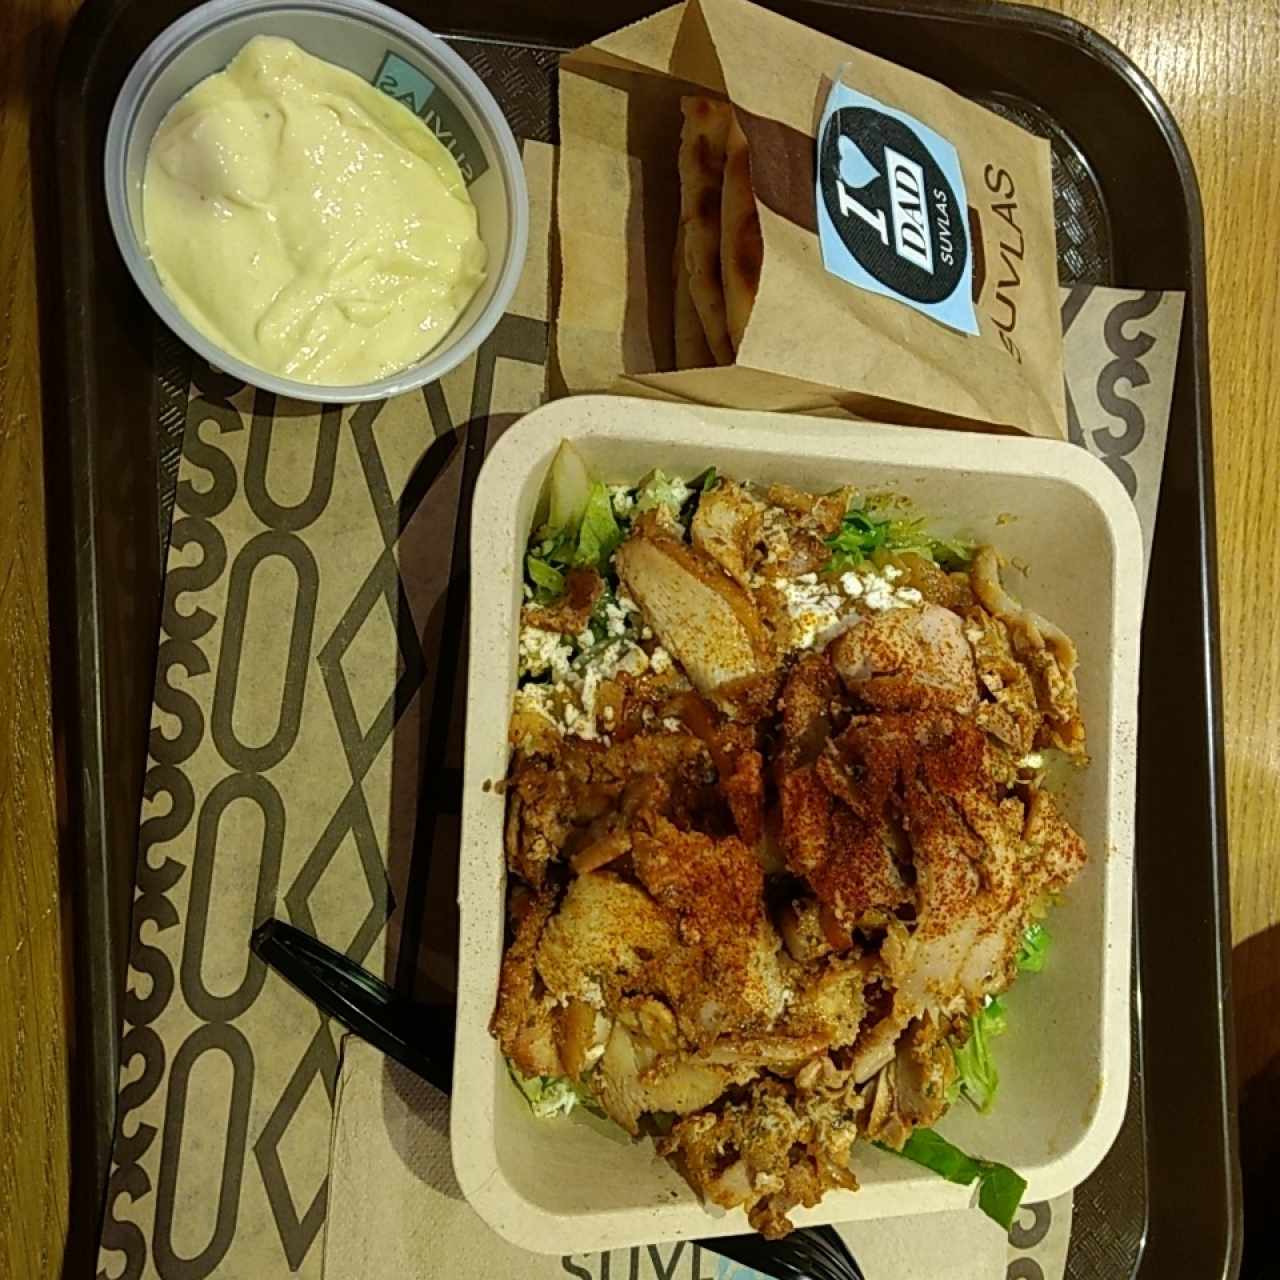 Ensalada griega con pollo